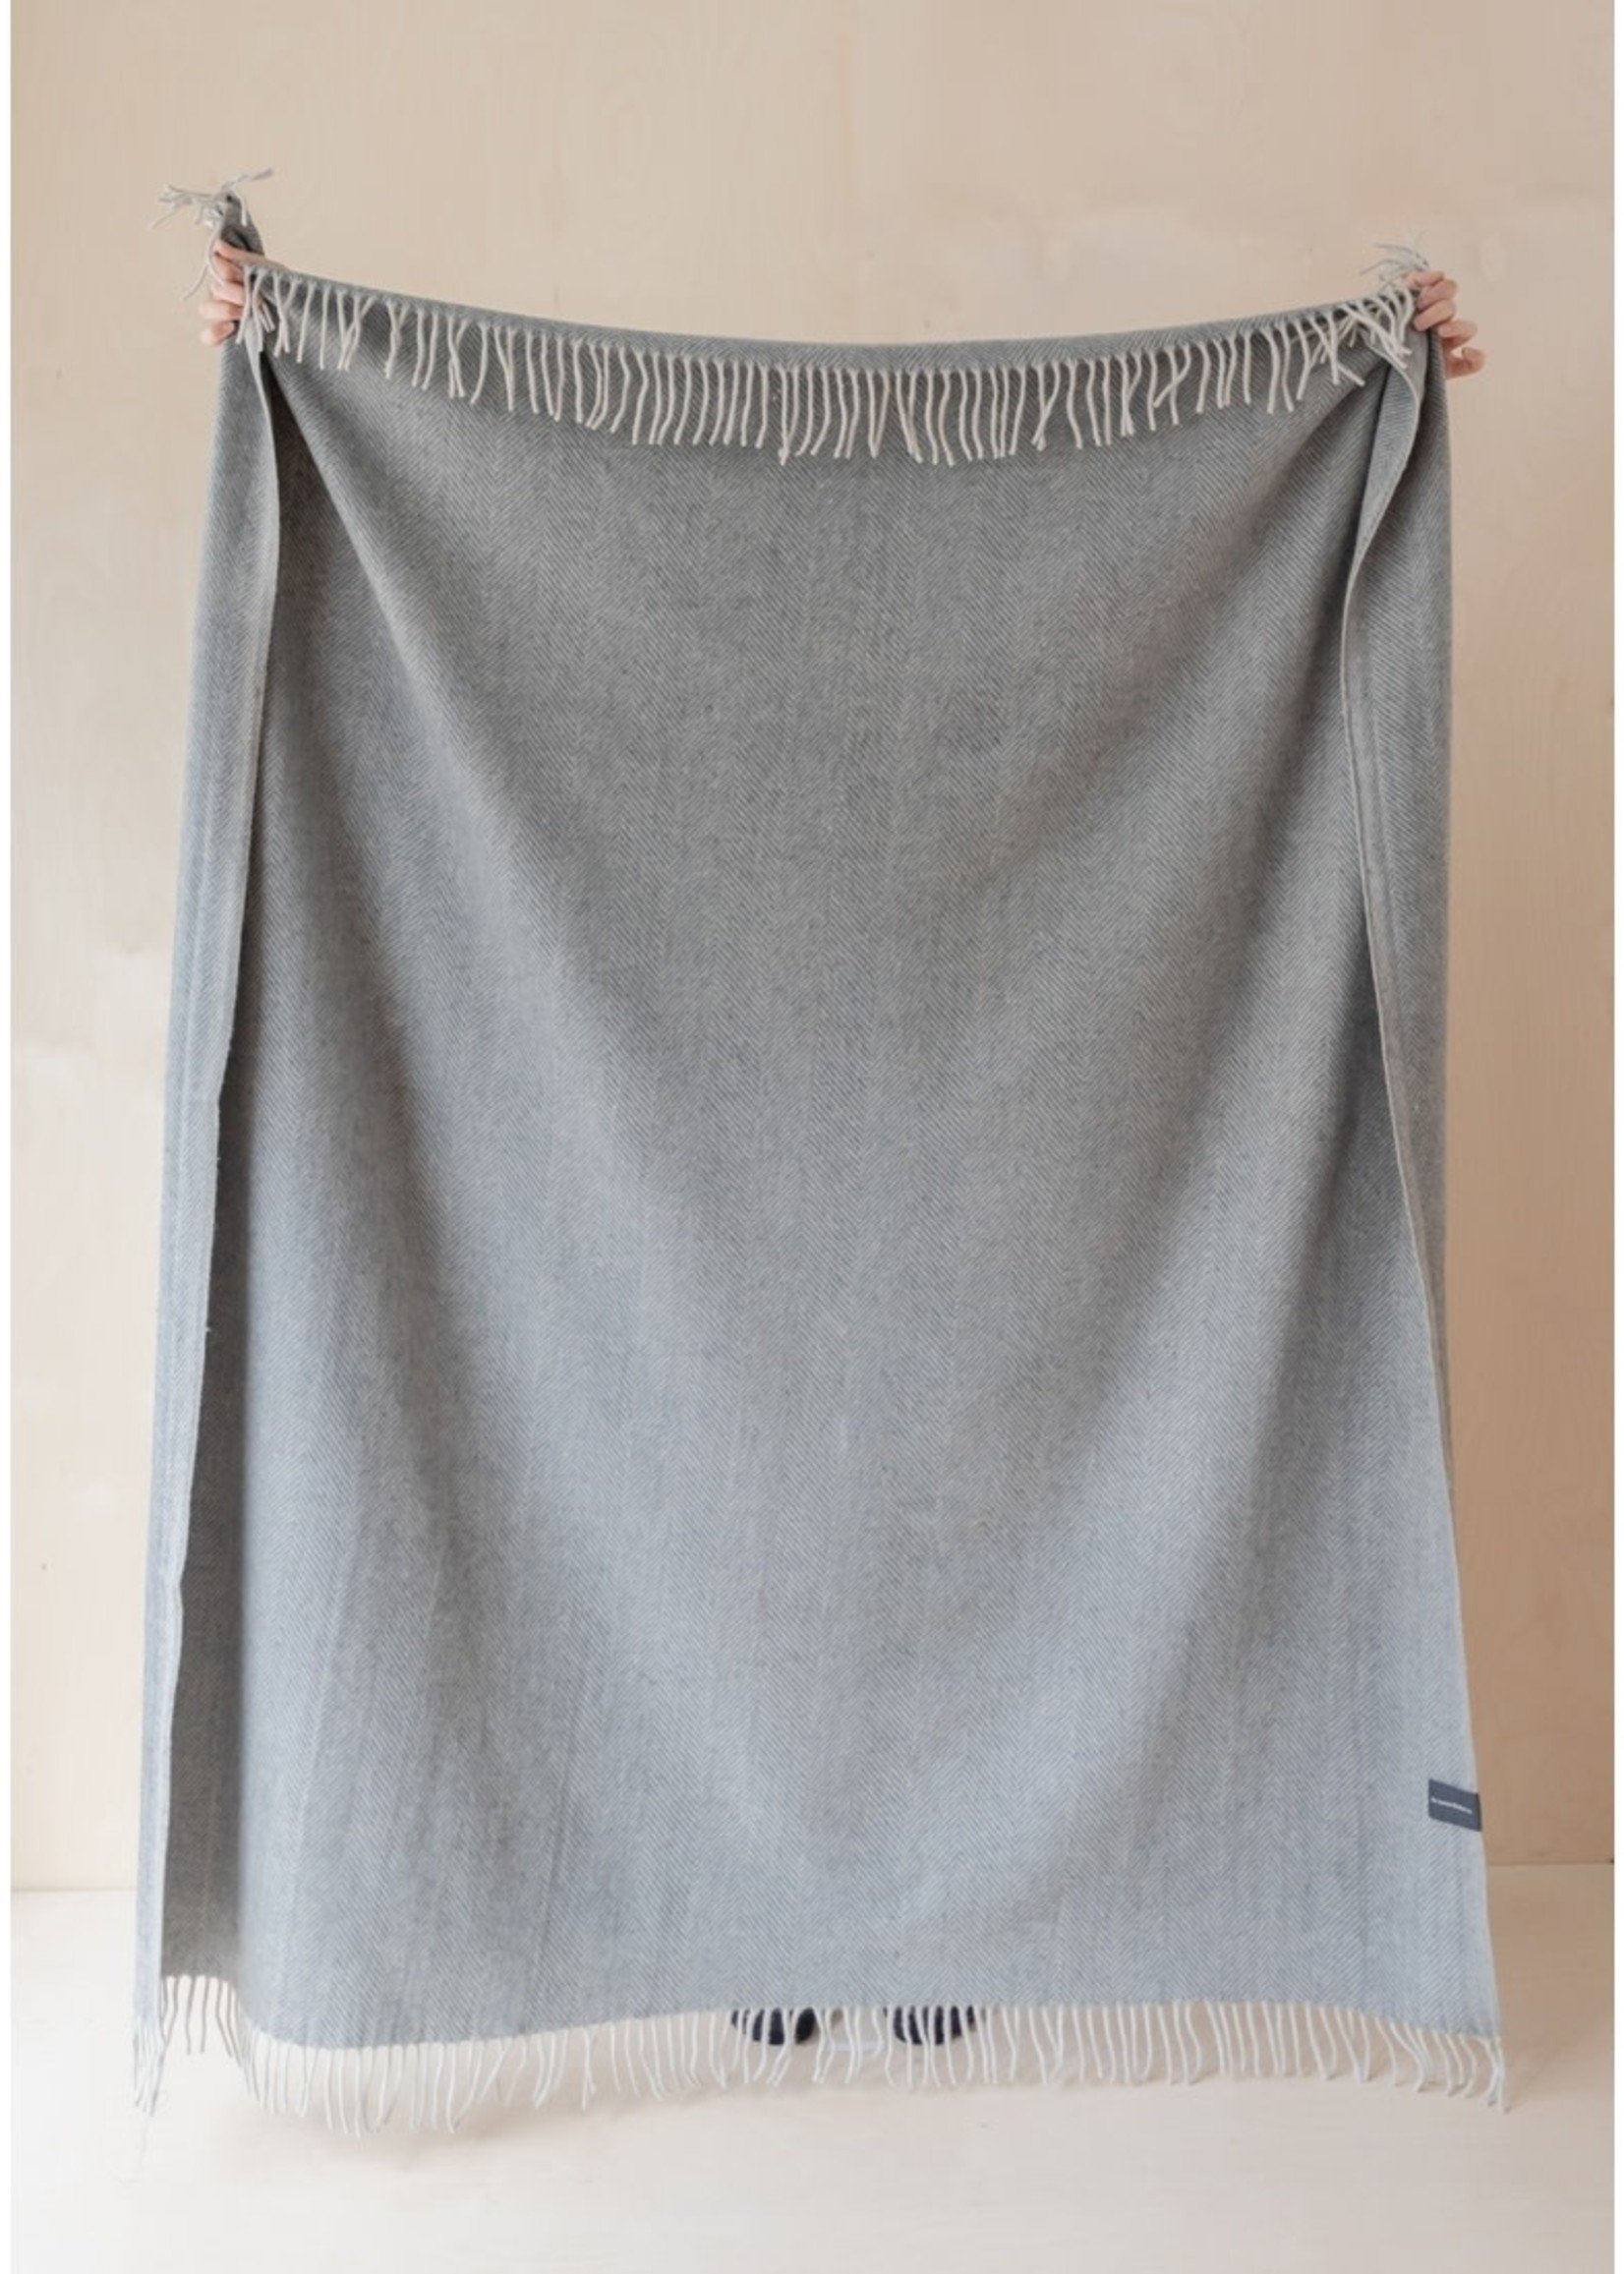 The Tartan Blanket Co. Herringbone Recycled Wool Blanket